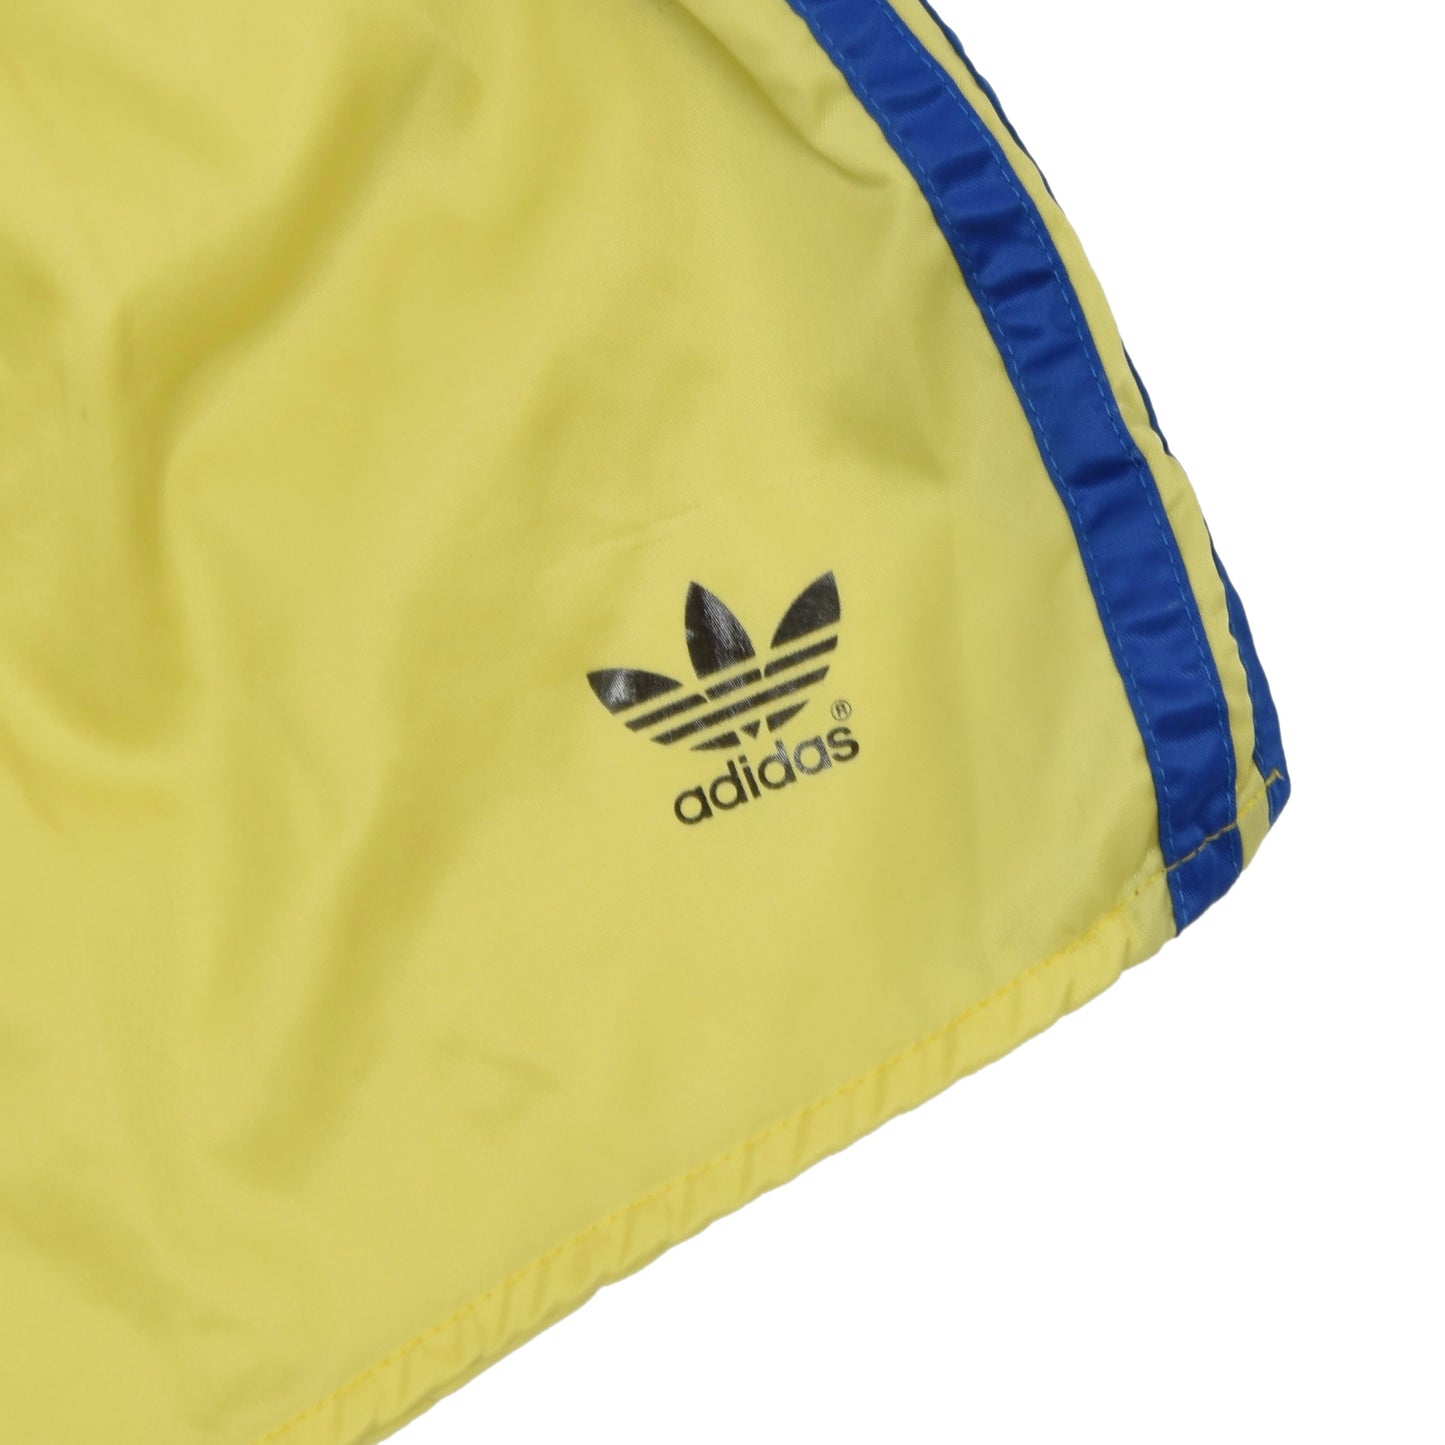 Vintage Adidas Sprinter Shorts Größe D6 - Gelb